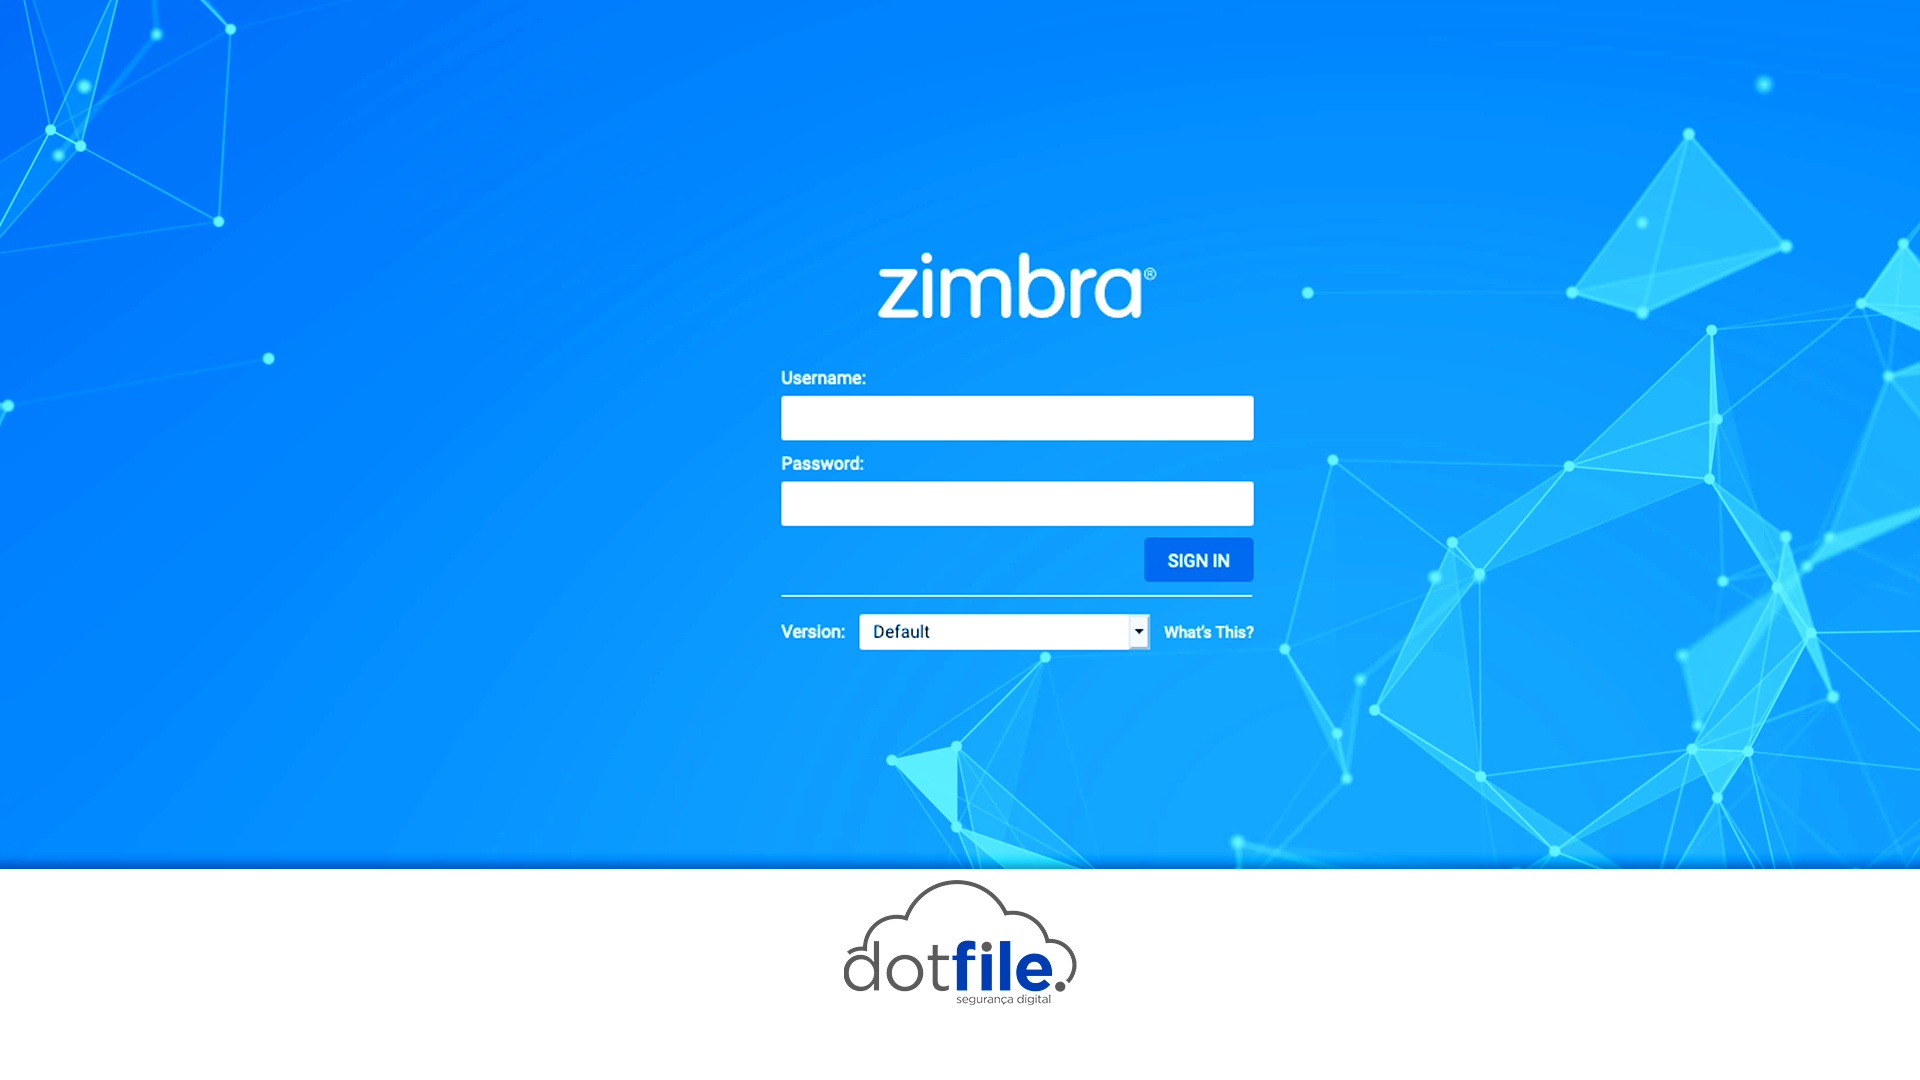 Zimbra: Conheça a nova plataforma de e-mail corporativo da